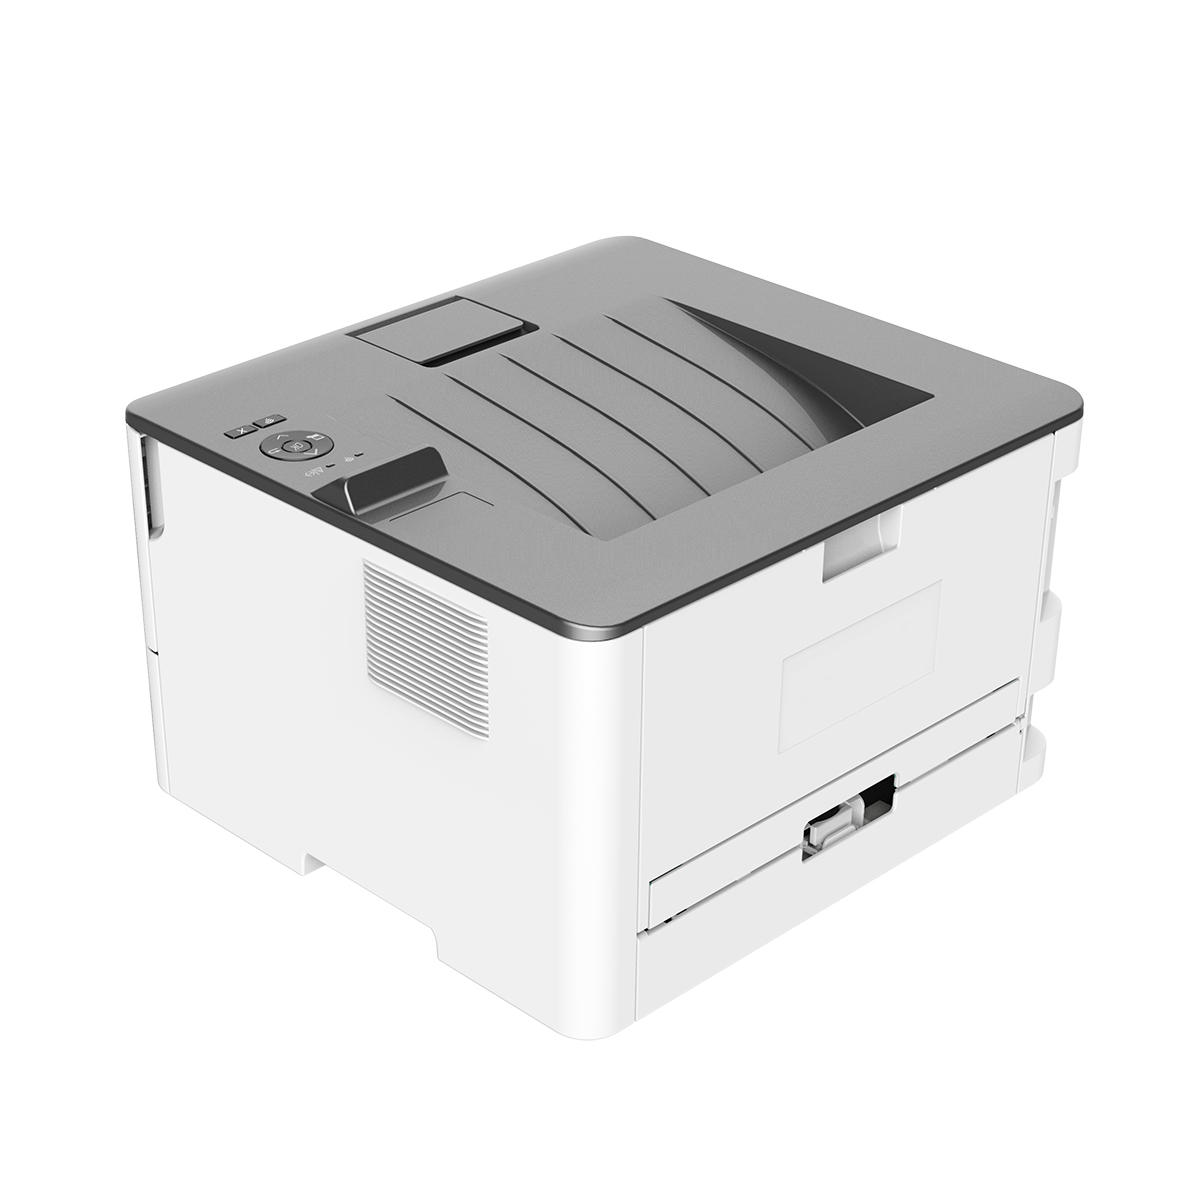 Impresora Laser Pantum P3010DW Monocromatica Duplex